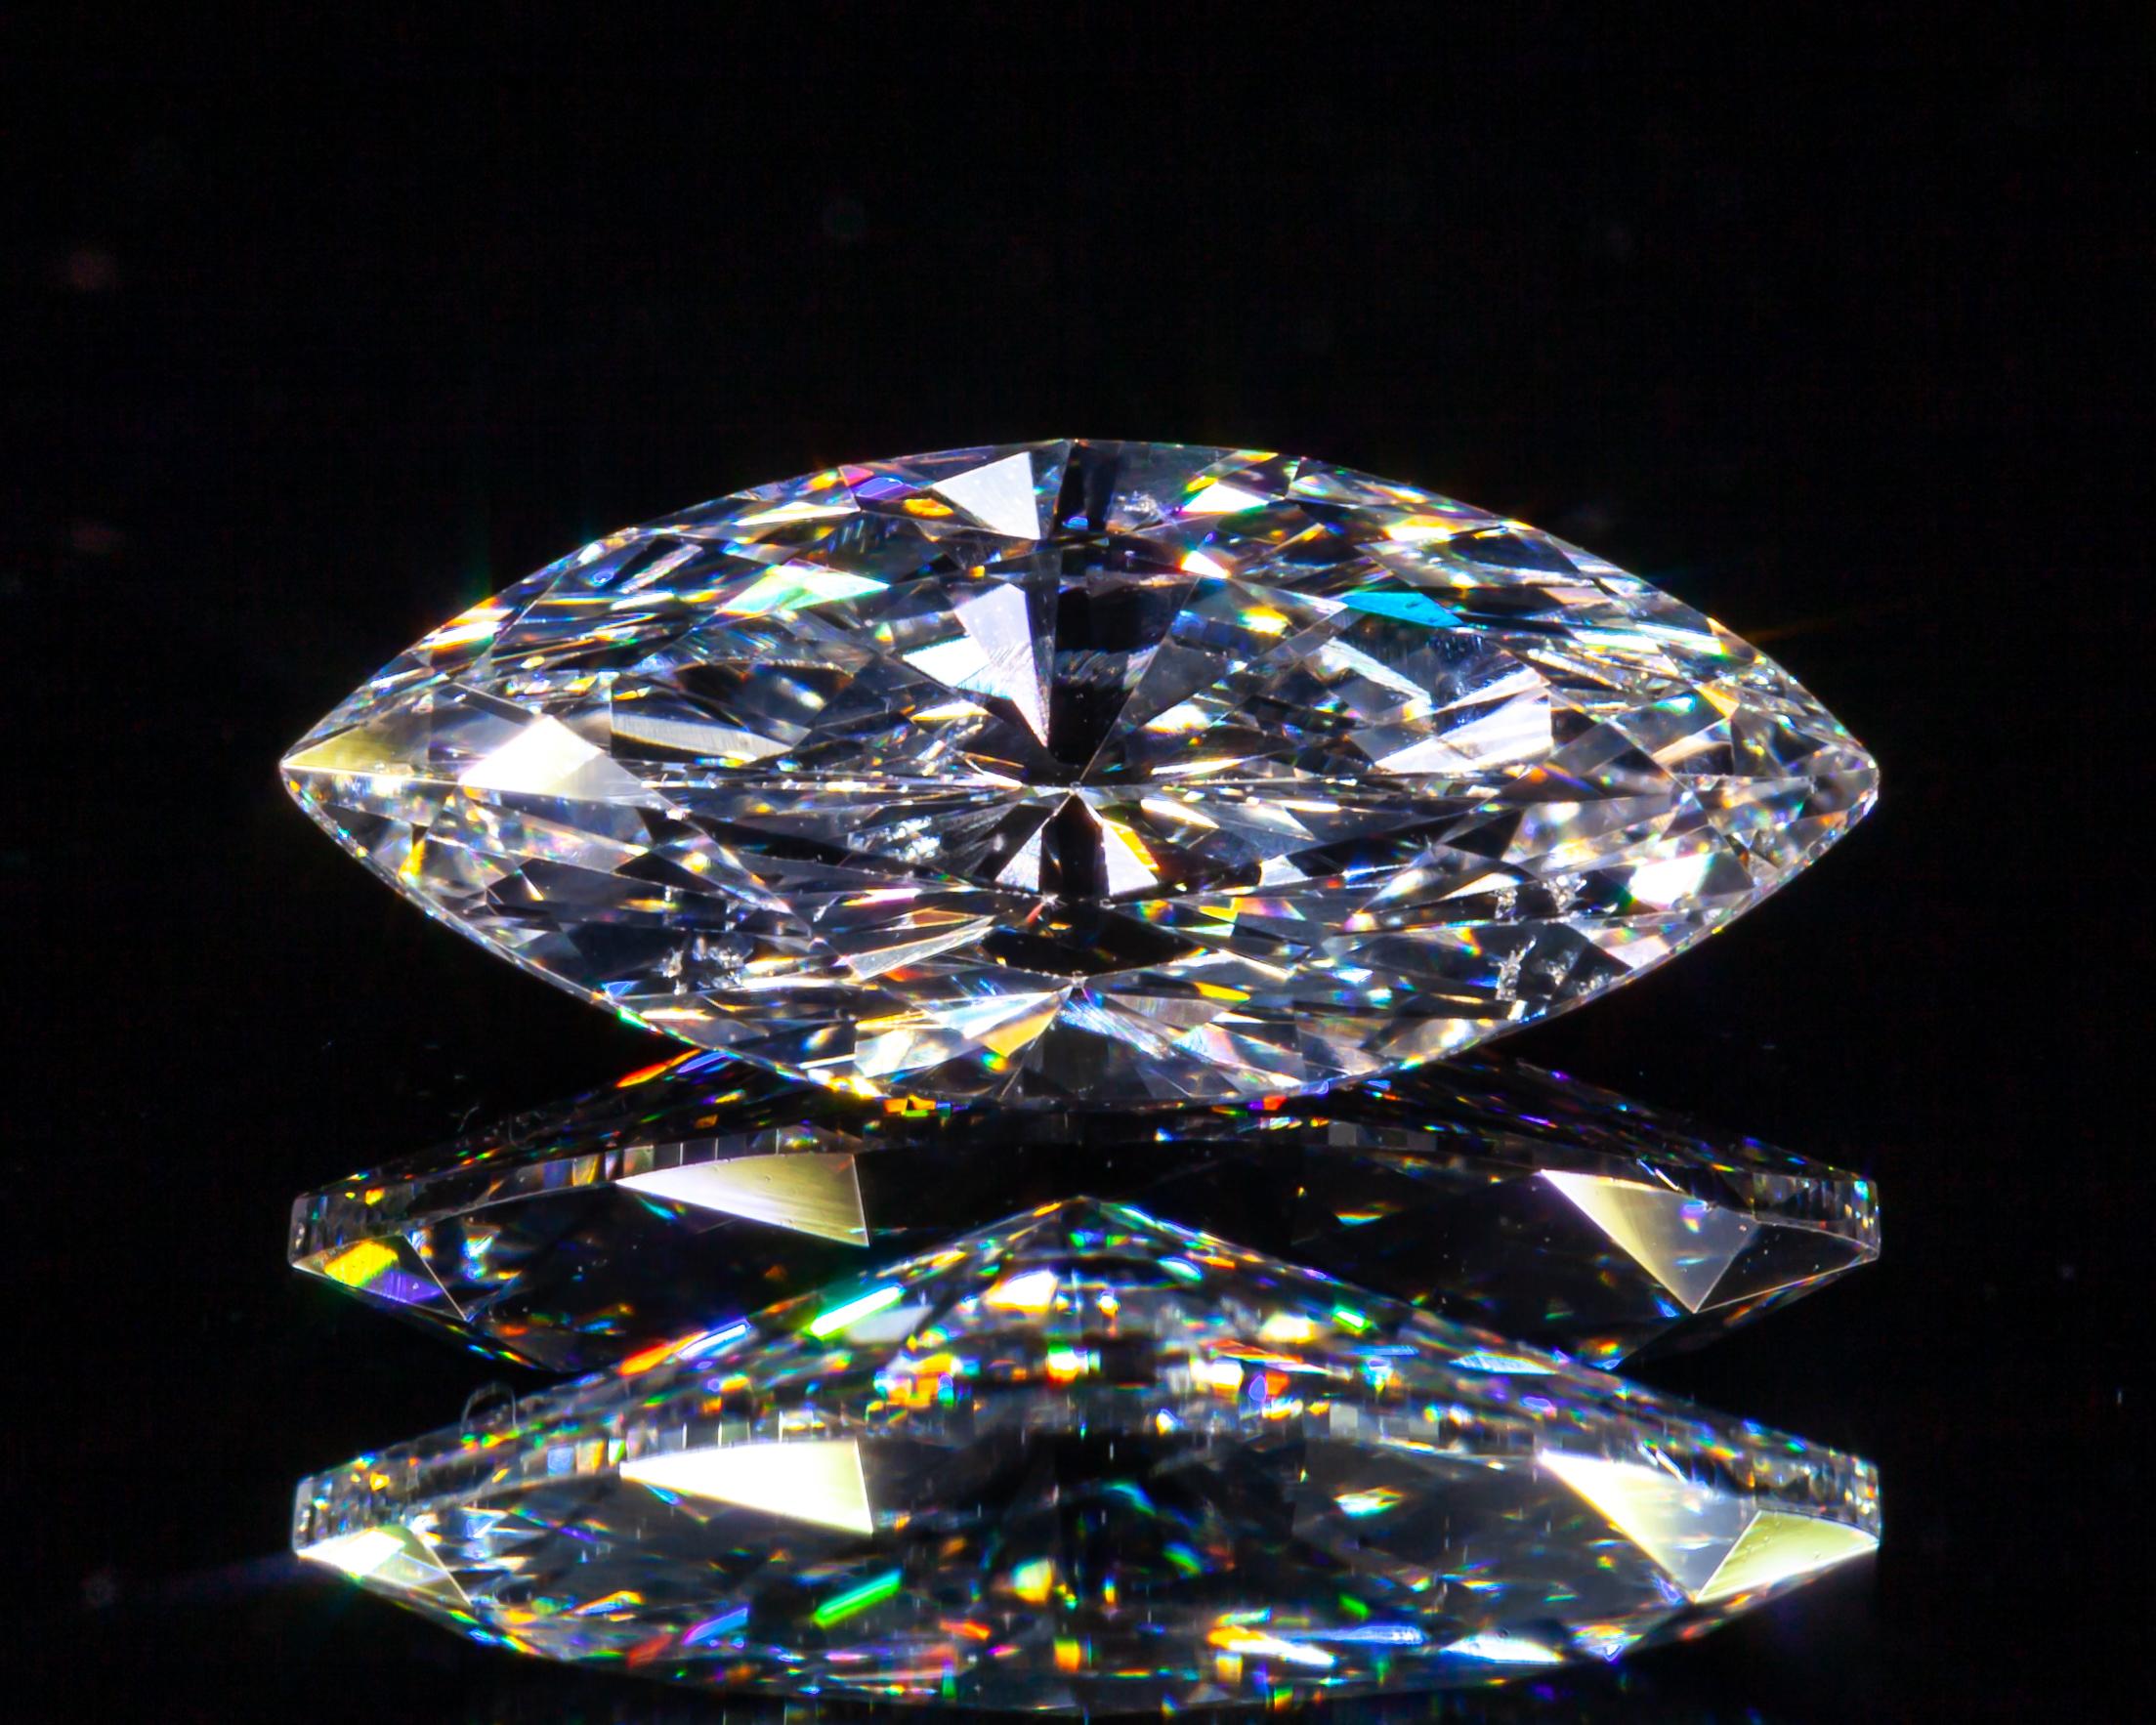 Diamant taille brillant marquise de 1,10 carat non serti D / I1 certifié GIA

Informations générales sur le diamant
Numéro de rapport GIA : 2185448158
Taille du diamant : Brilliante Marquise 
Dimensions : 11,10 x 5,02 x 3,37 mm

Résultats de la